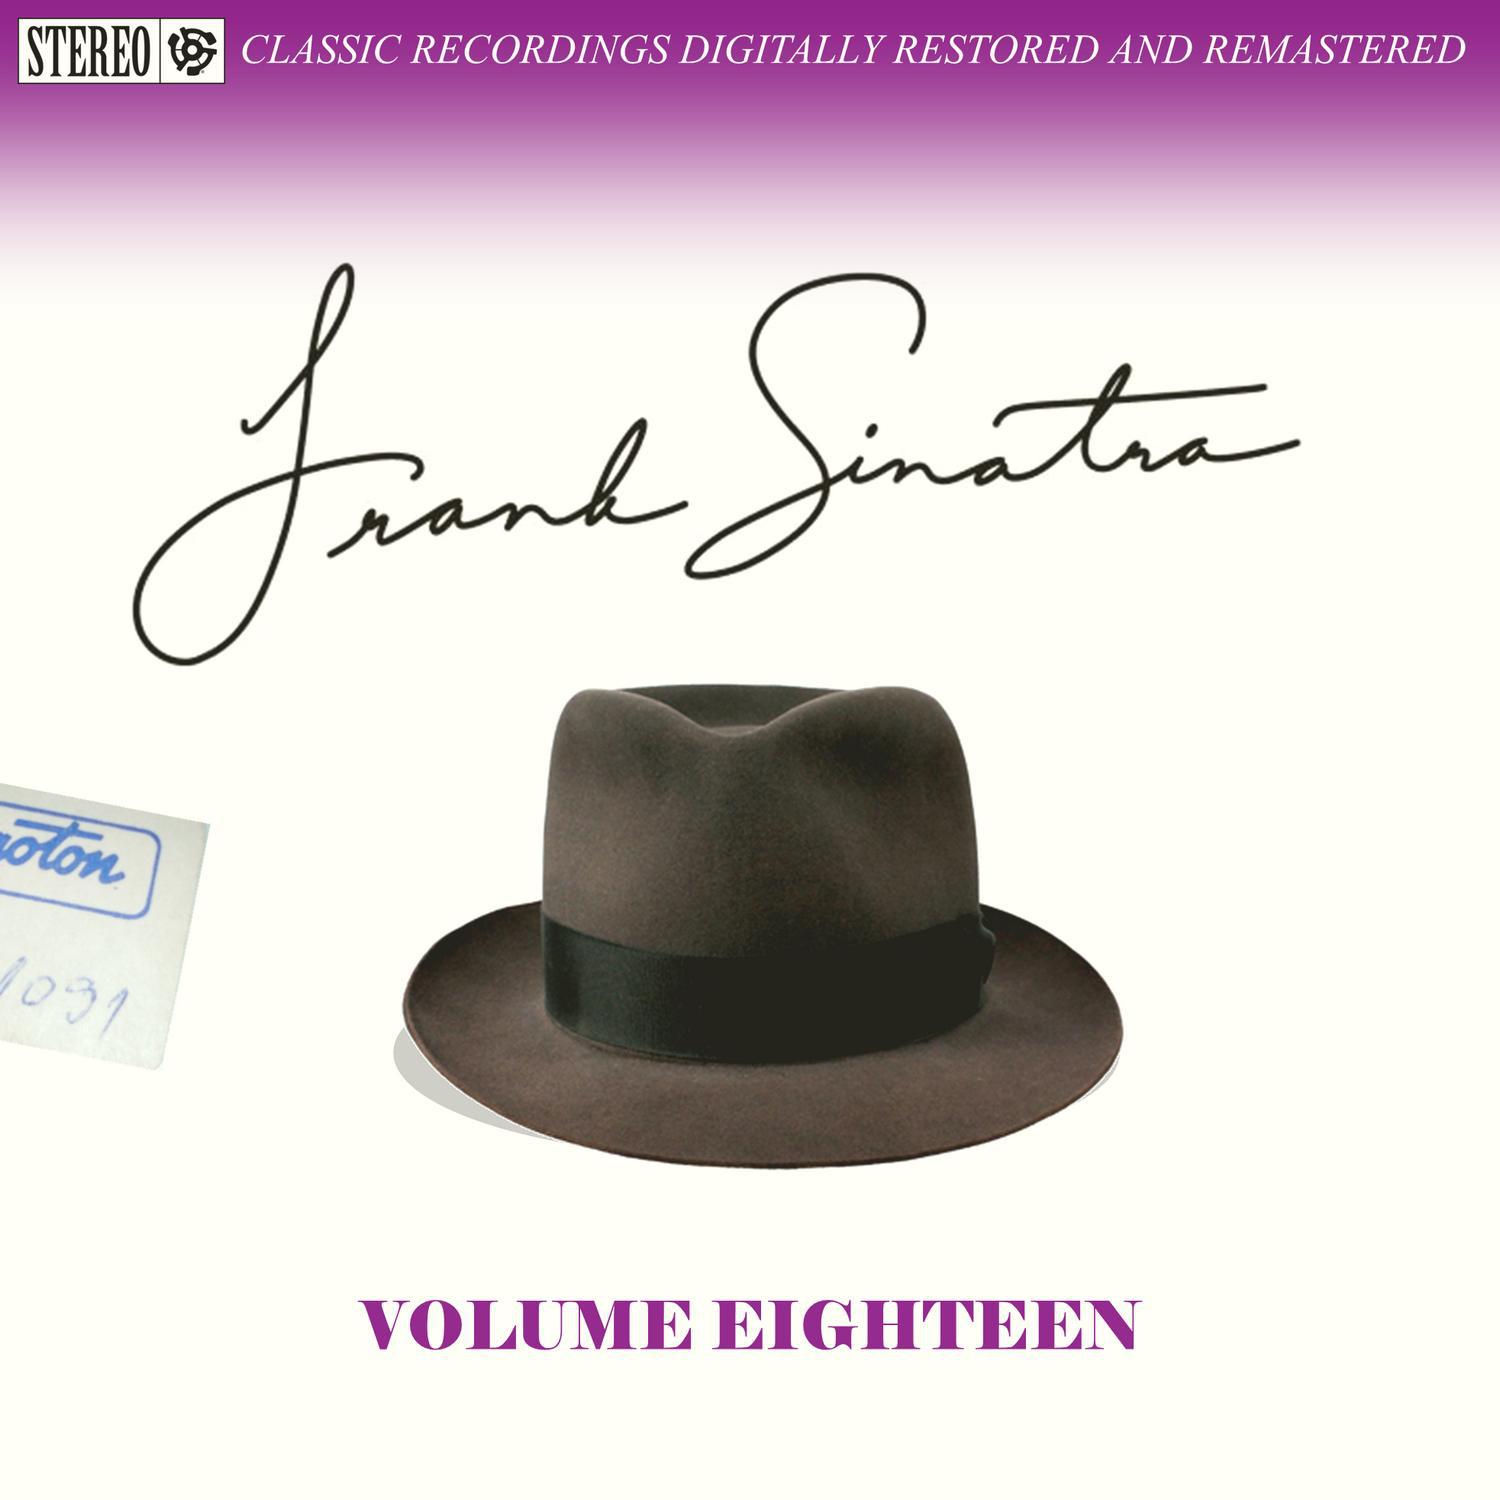 Frank Sinatra Volume Eighteen